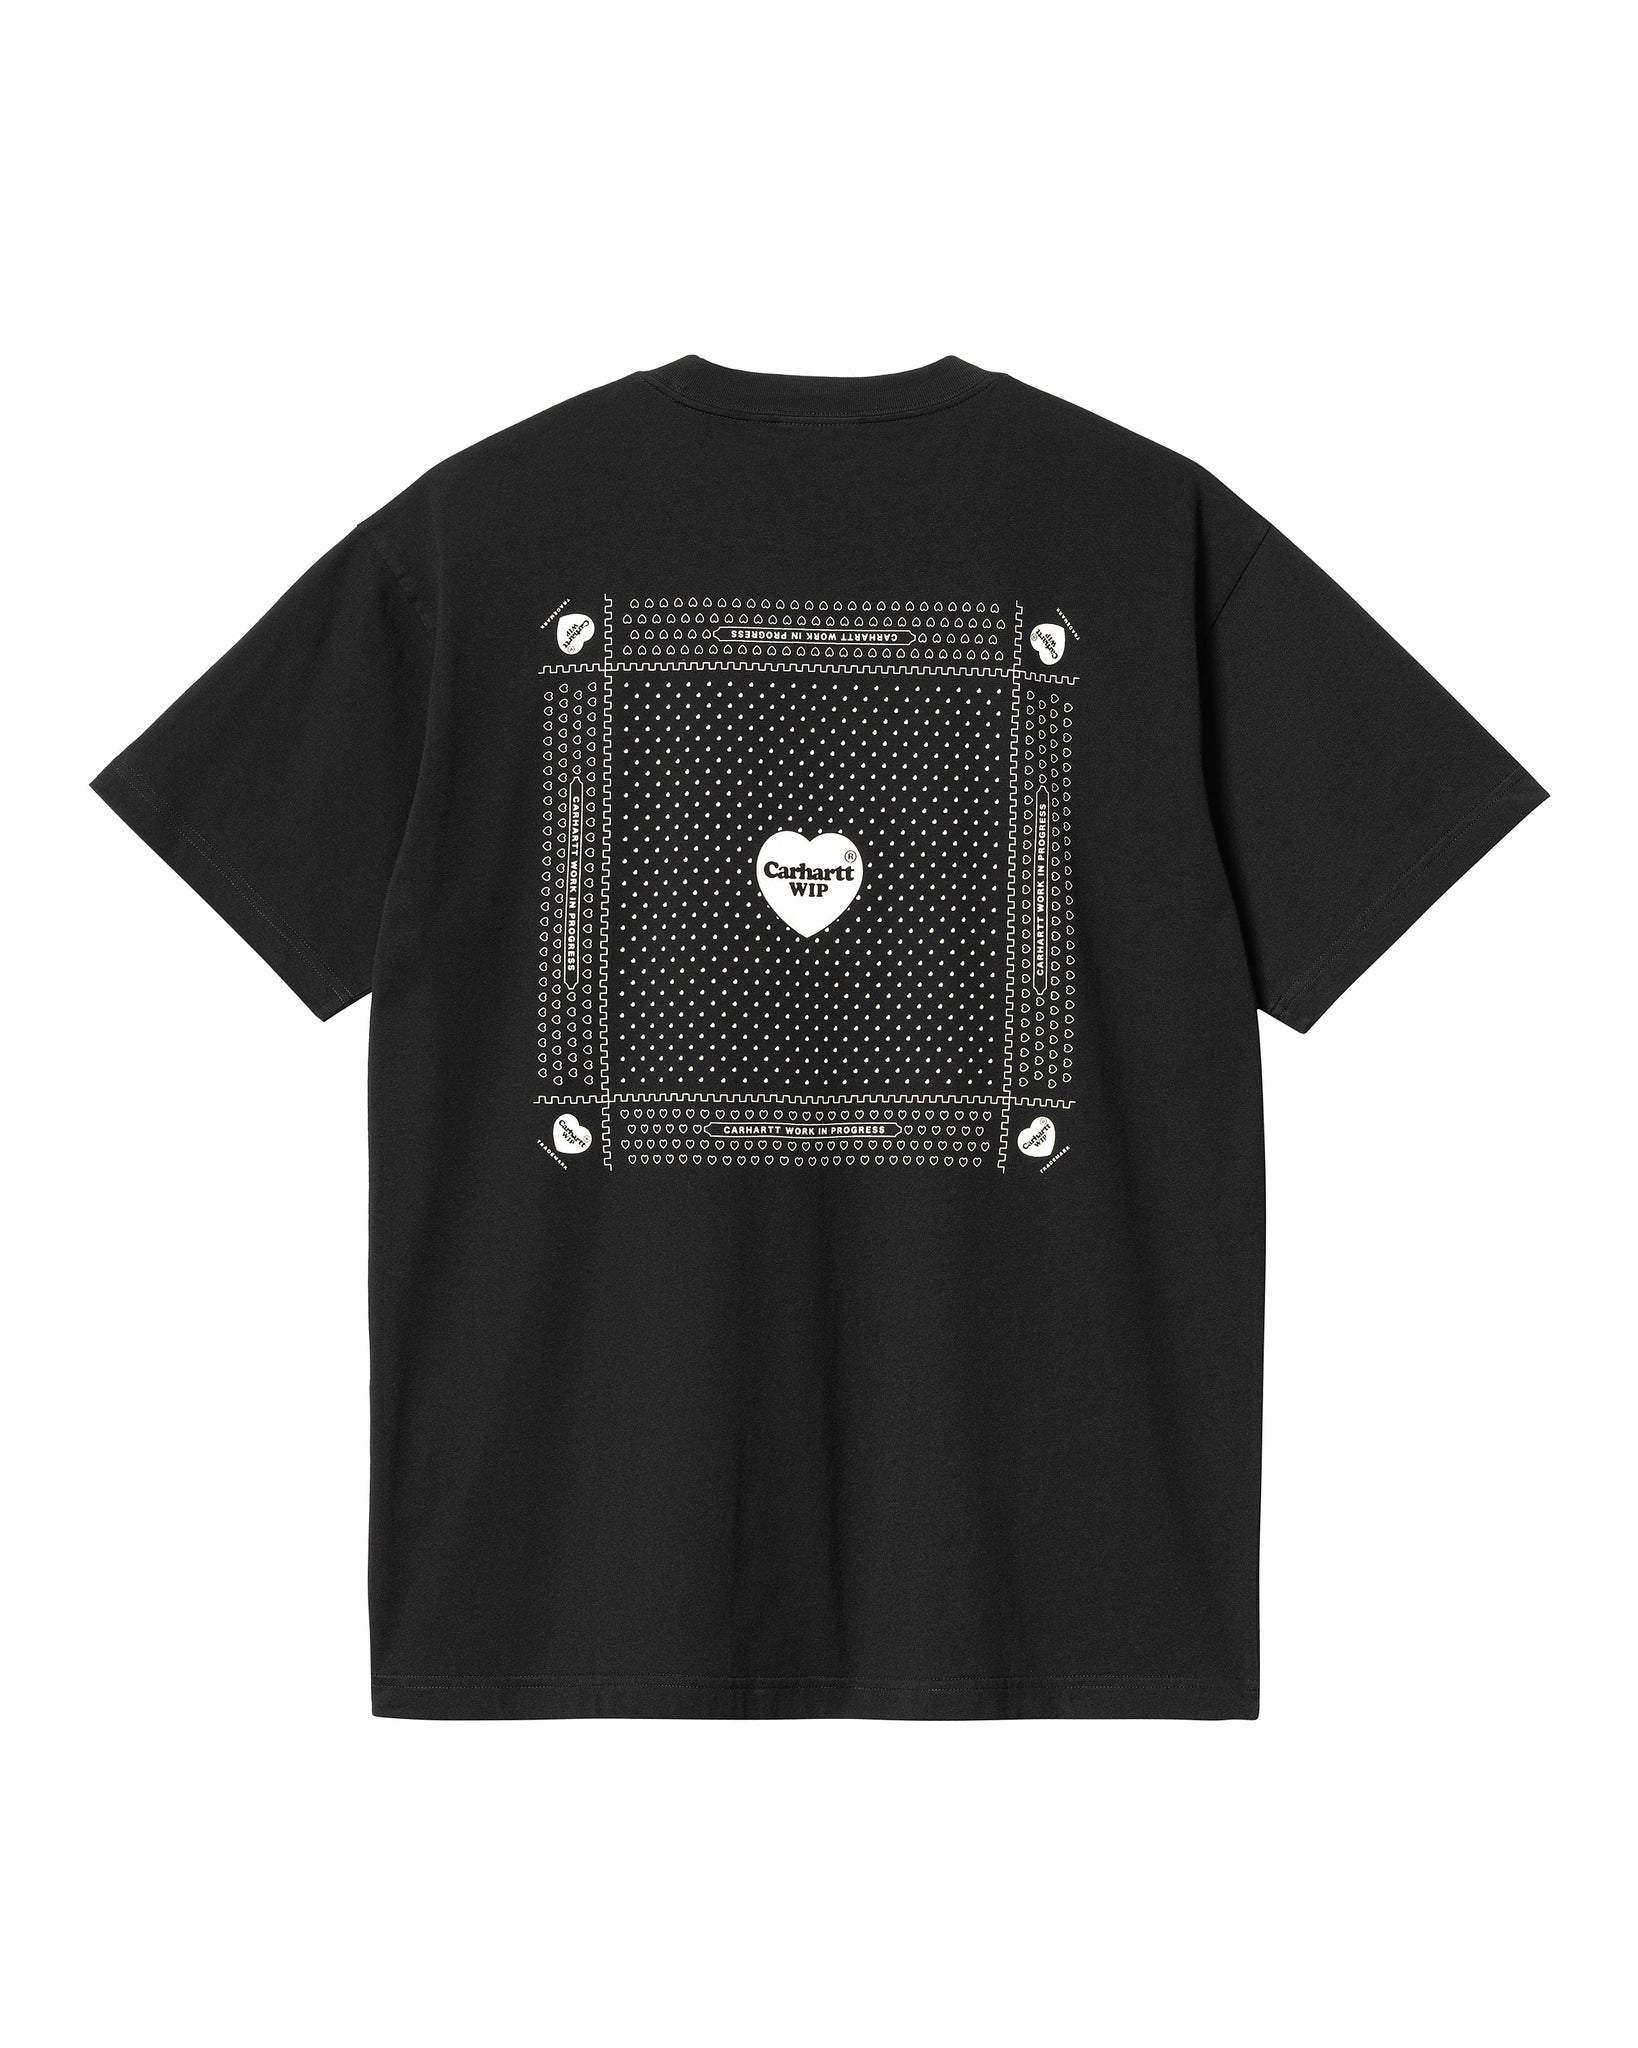 T-shirt S/S Heart Bandana - Black/White (stone washed)